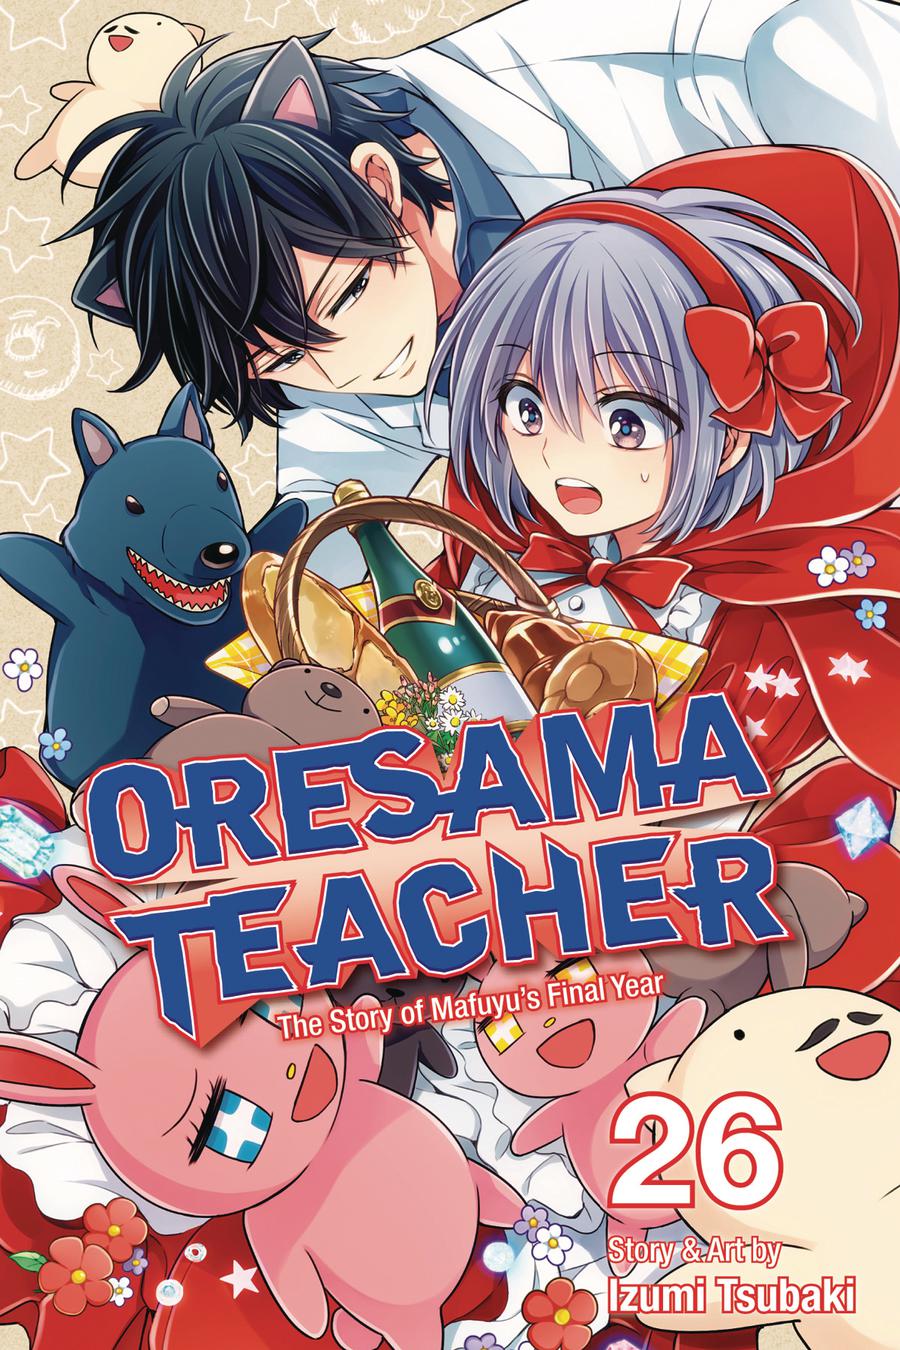 Oresama Teacher Vol 26 GN